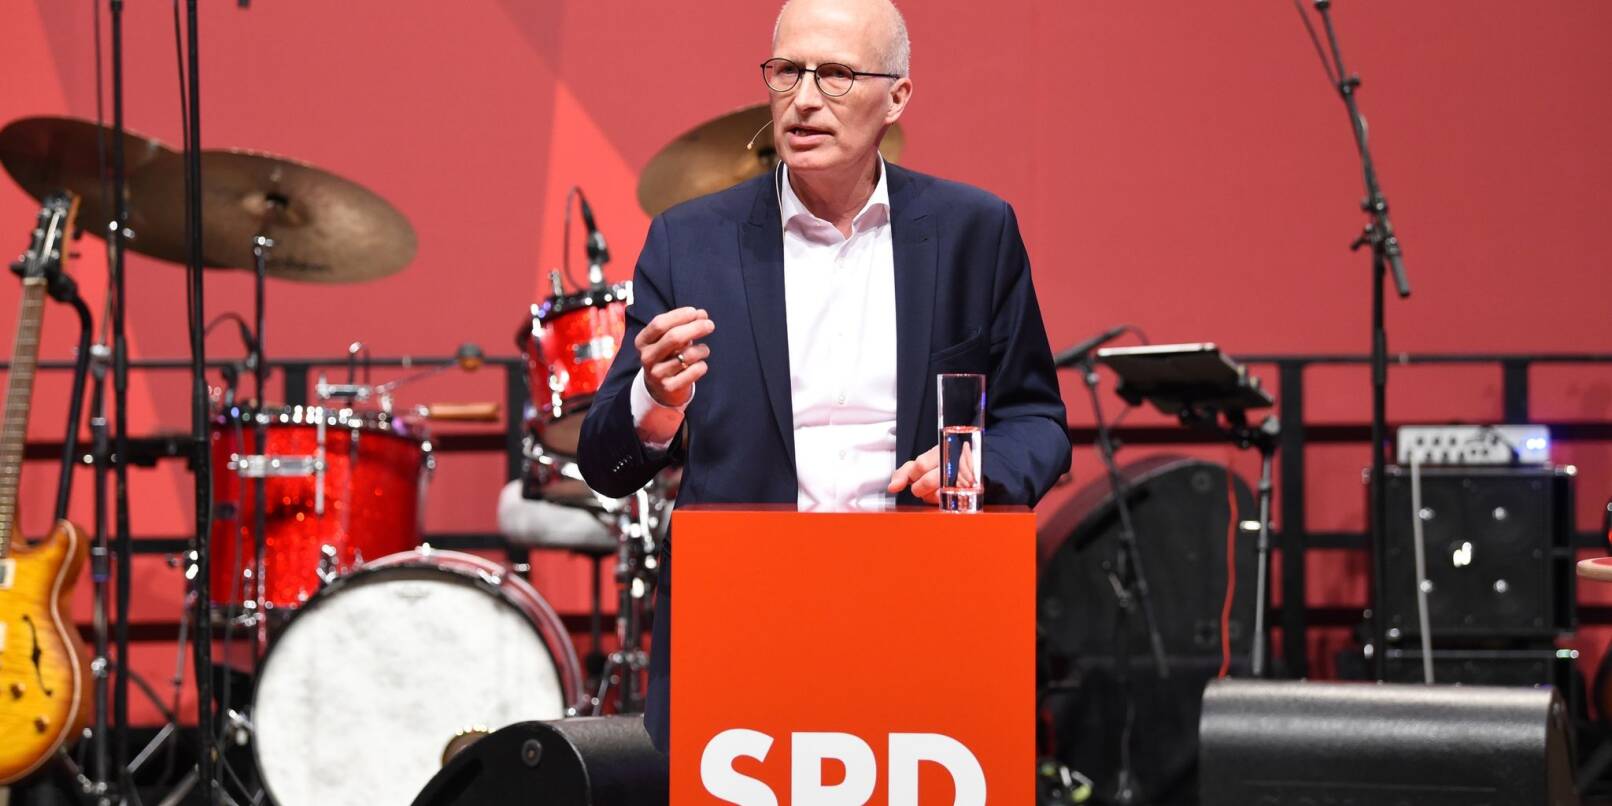 Hamburgs Erster Bürgermeister Peter Tschentscher (SPD) spricht bei einer Wahlkampfveranstaltung in Bremen.